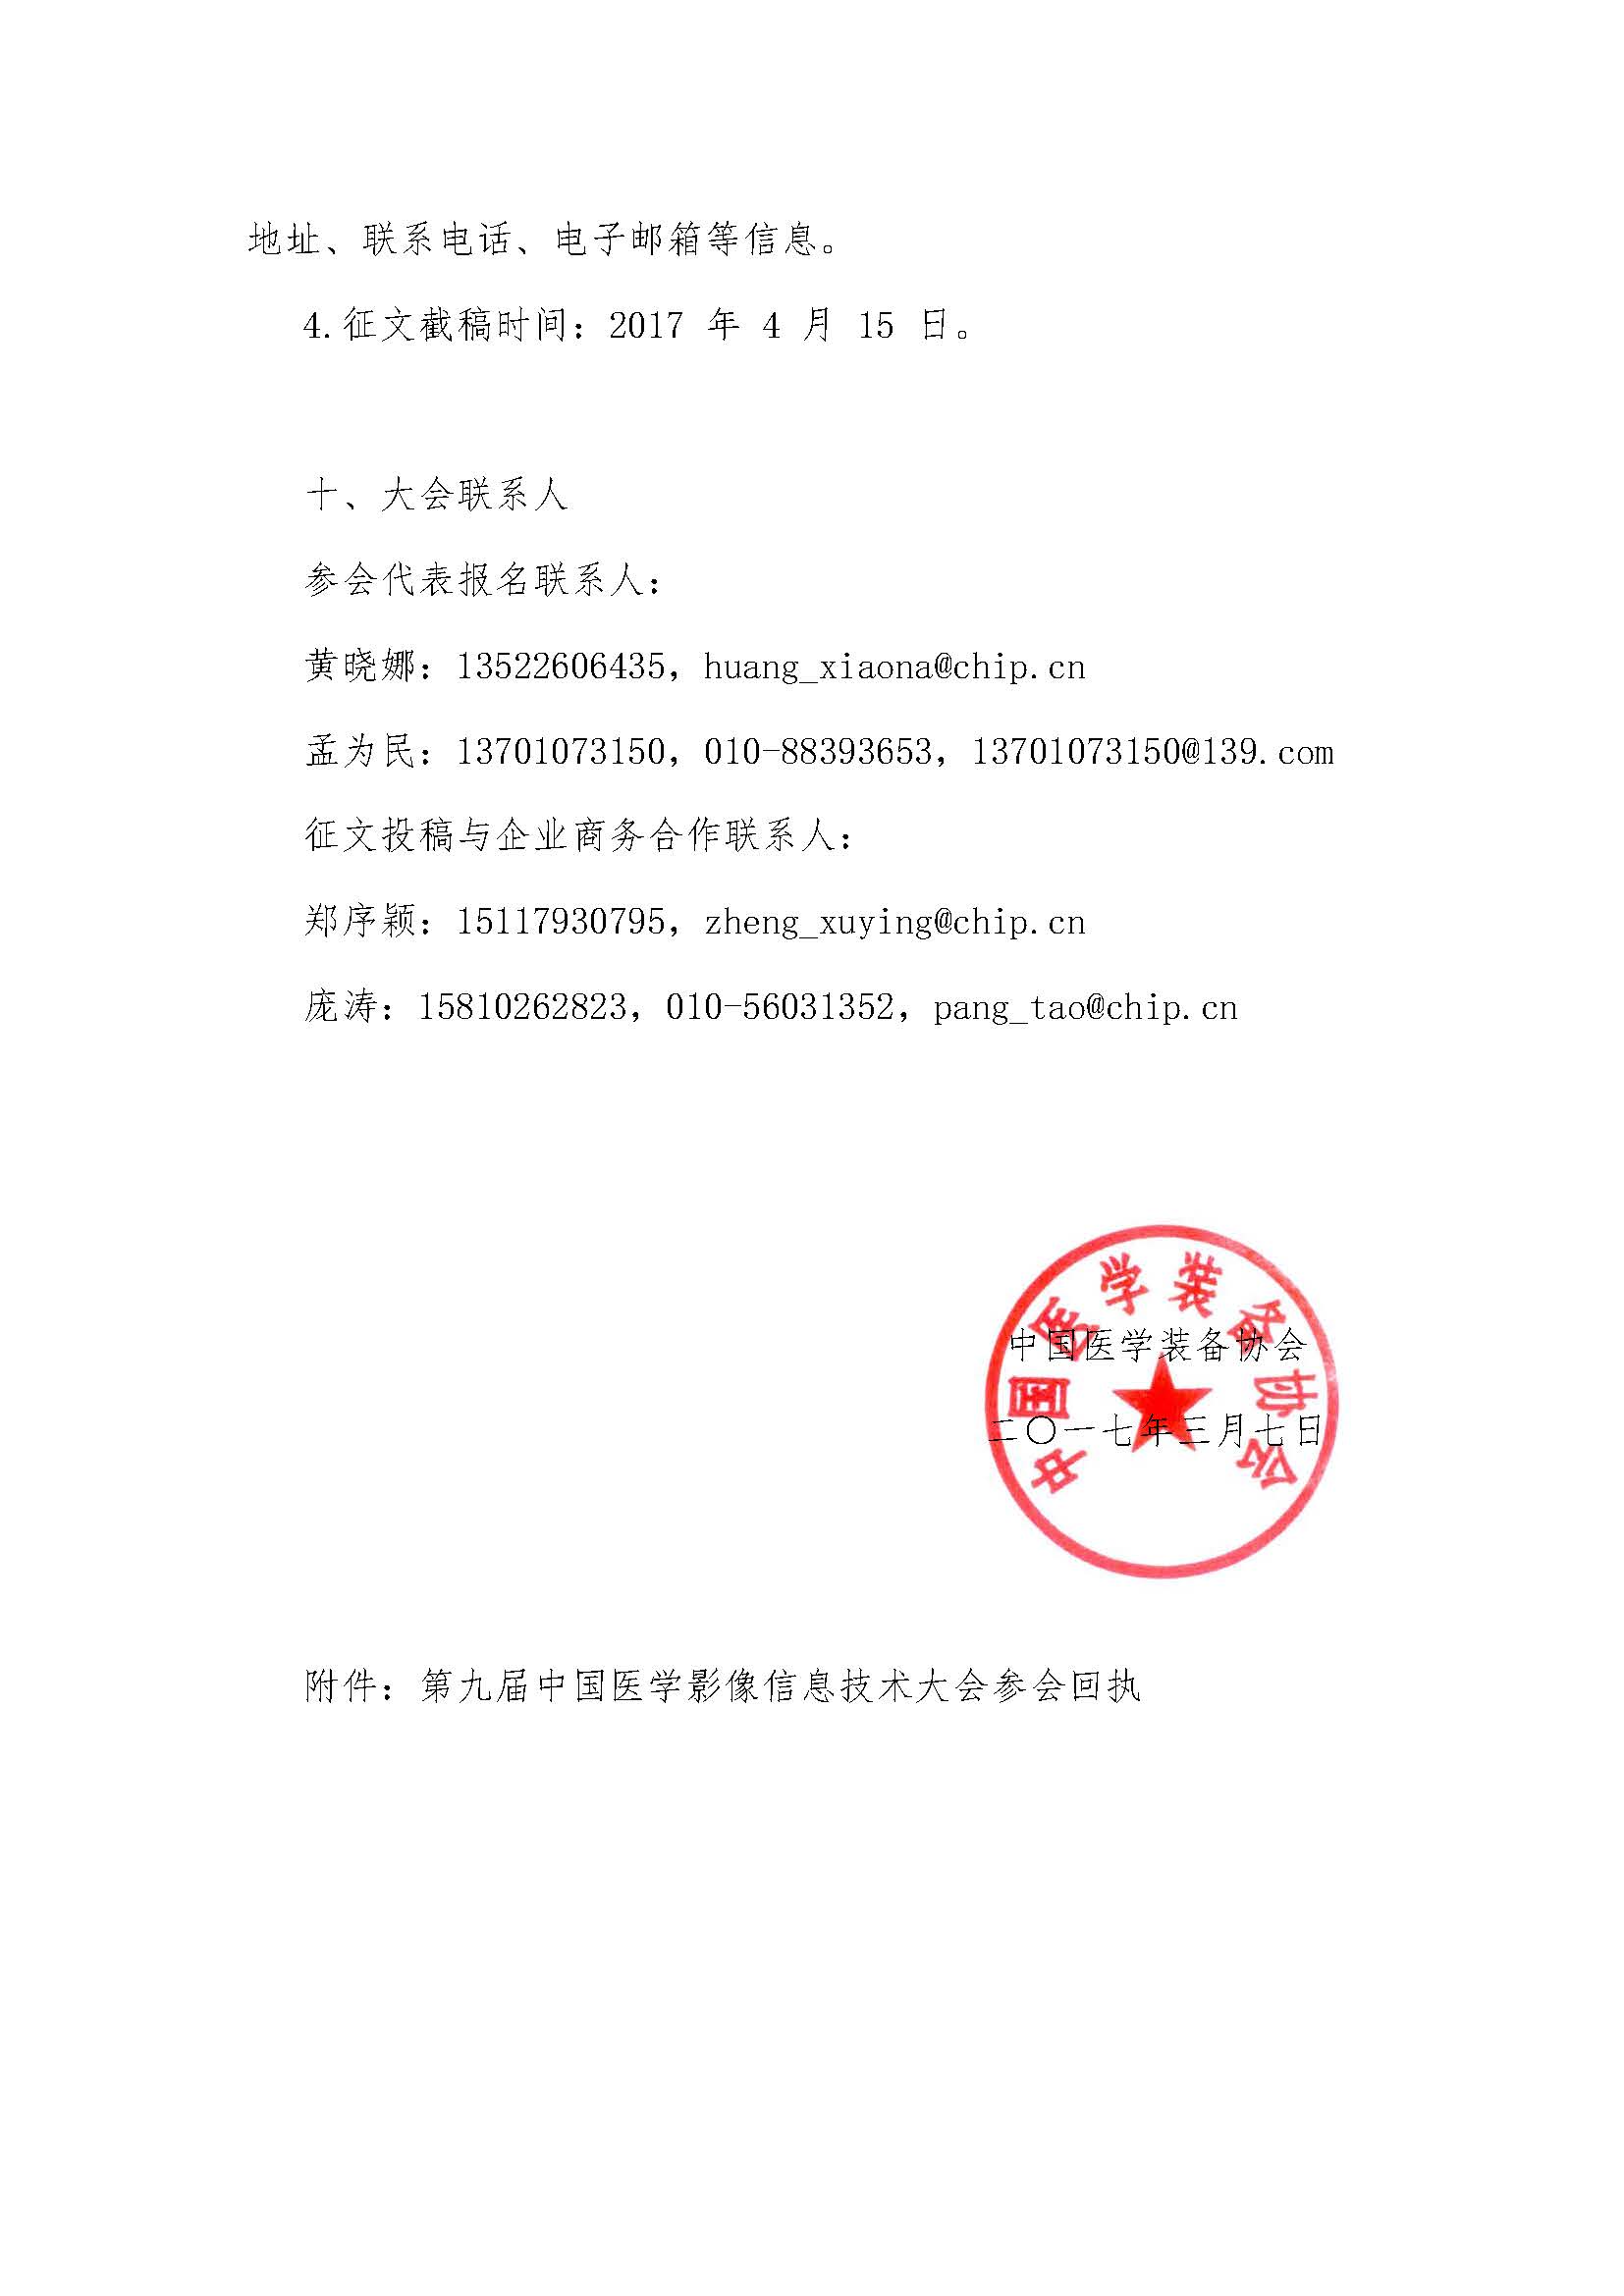 【IHE中国】关于召开“第九届中国医学影像信息技术大会”的函(图4)